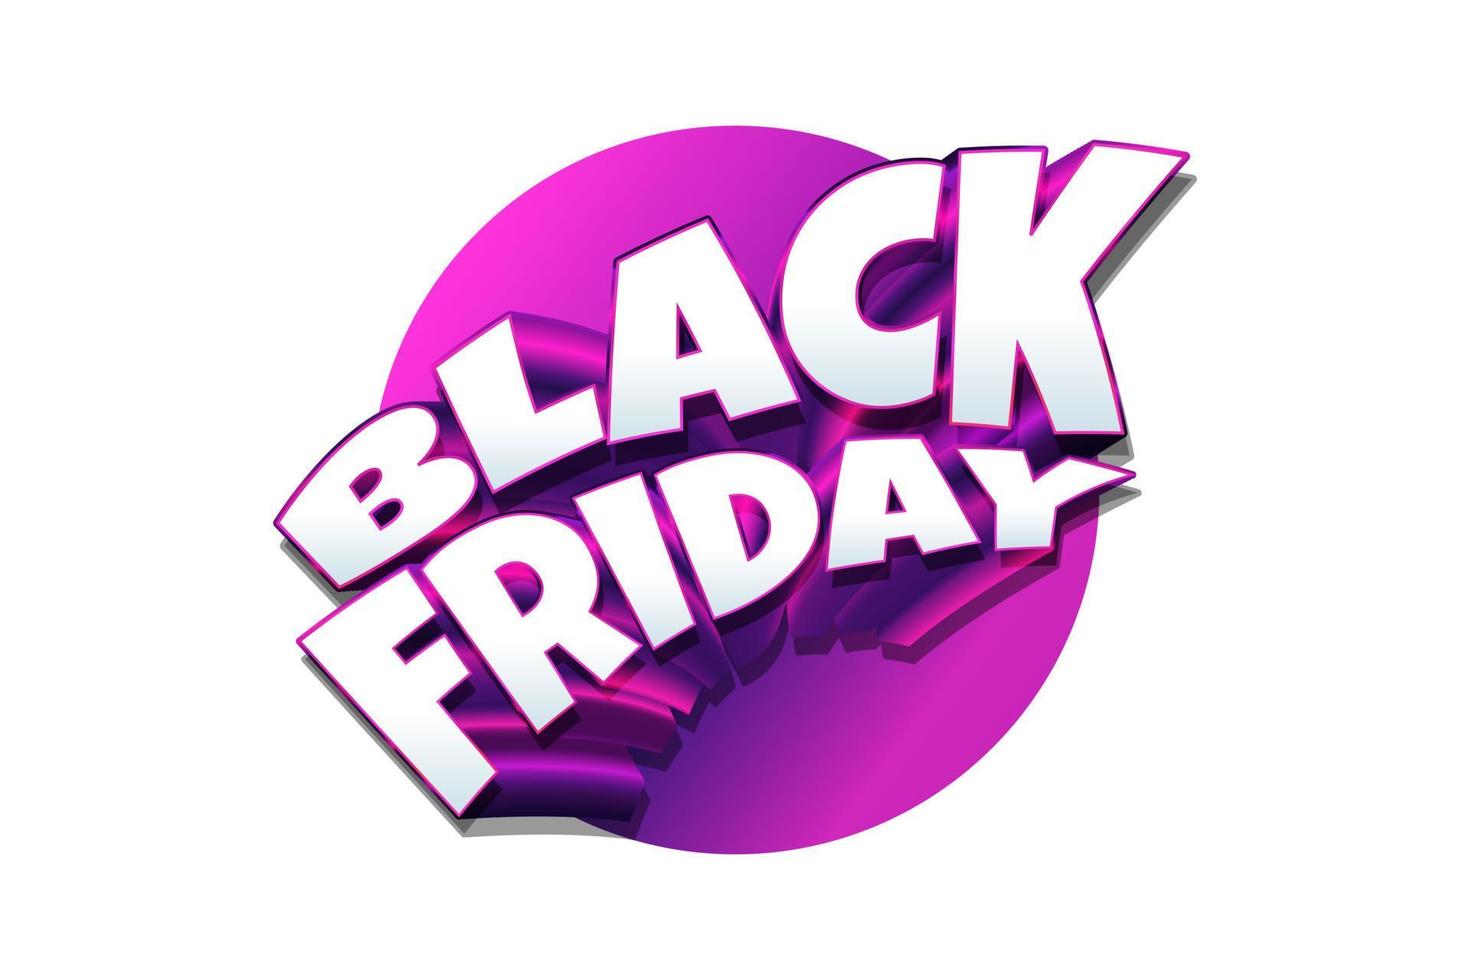 Texte de vendredi noir coloré 3d sur fond blanc. conception de bannières publicitaires et promotionnelles pour la campagne du vendredi noir vecteur